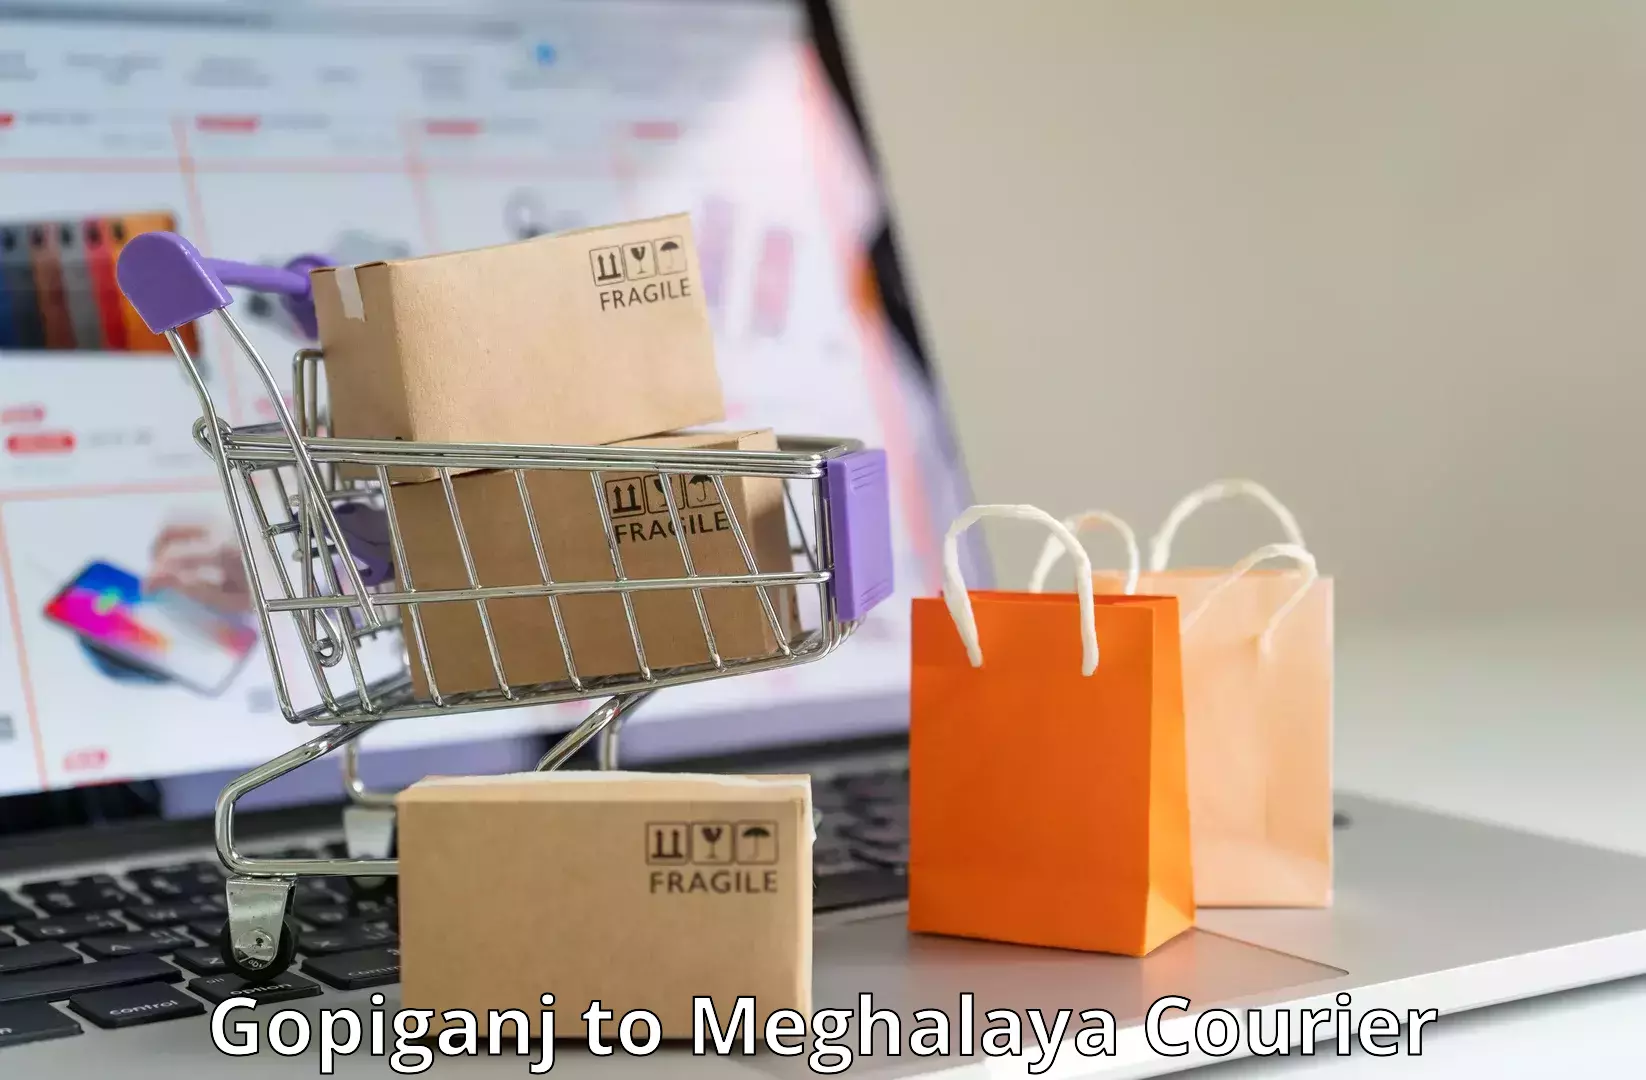 Individual parcel service Gopiganj to Meghalaya